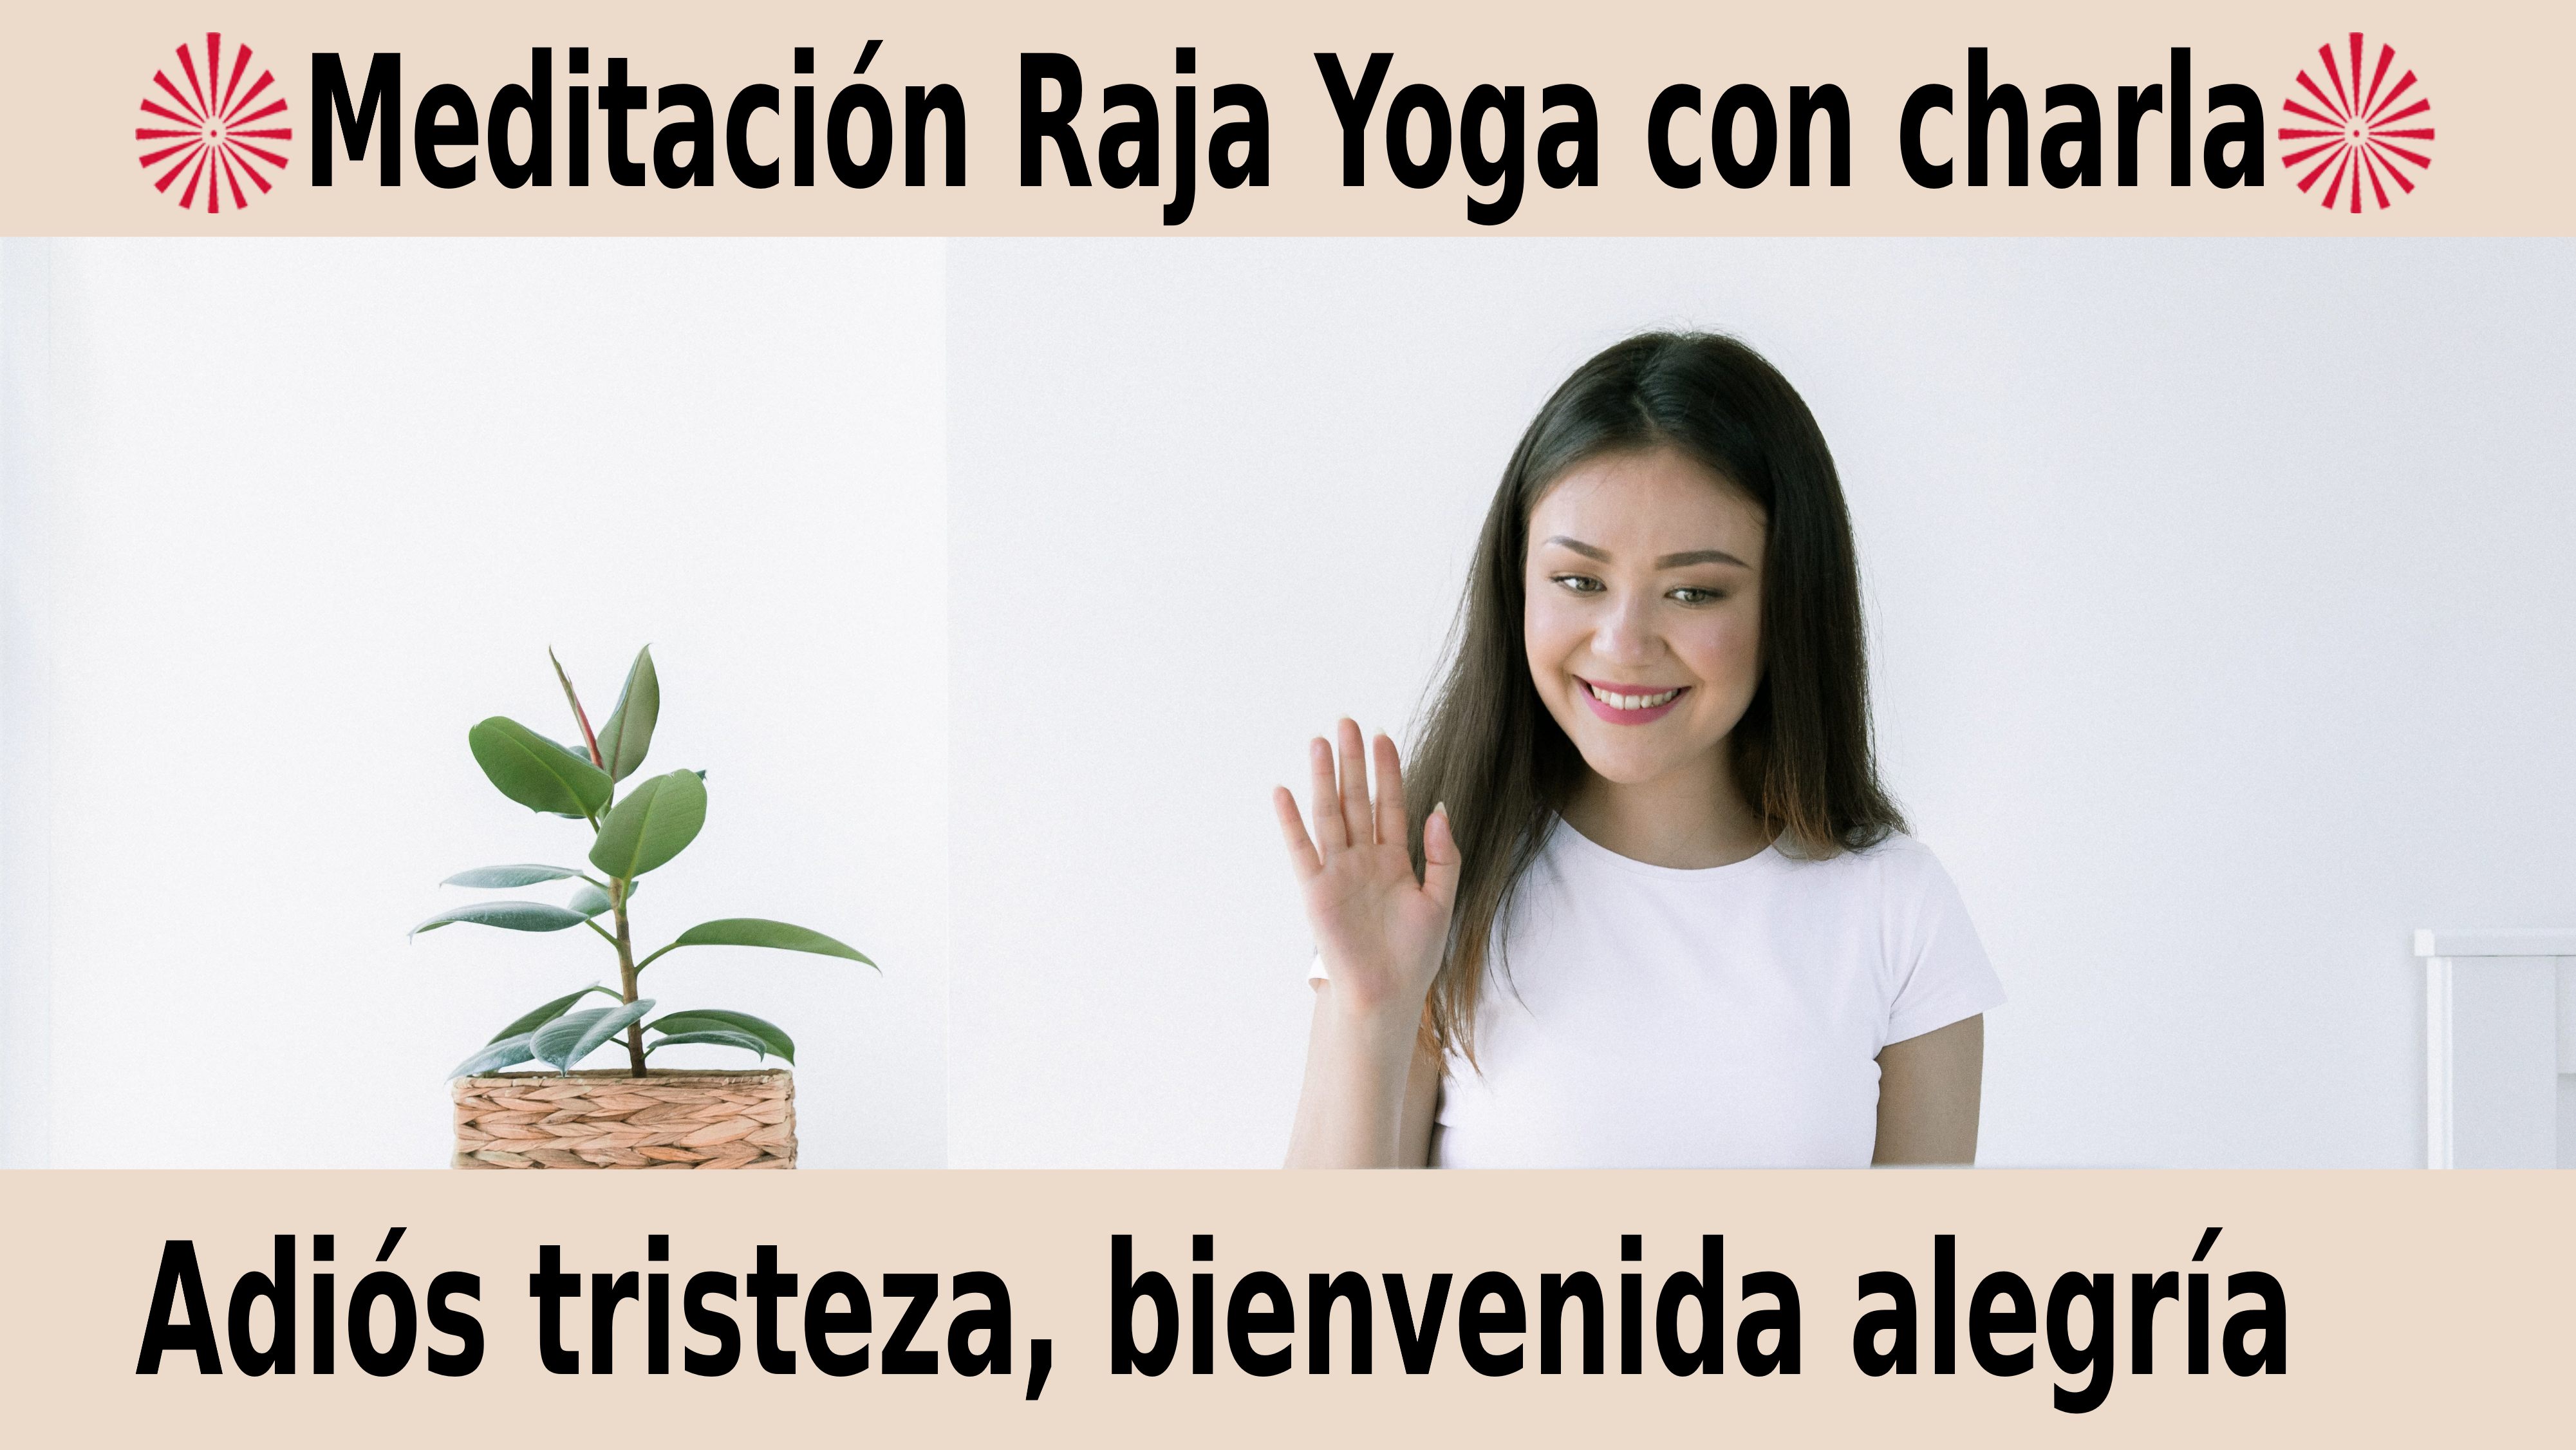 Meditación Raja Yoga con charla: Adiós tristeza, bienvenida alegría (22 Noviembre 2020) On-line desde Valencia